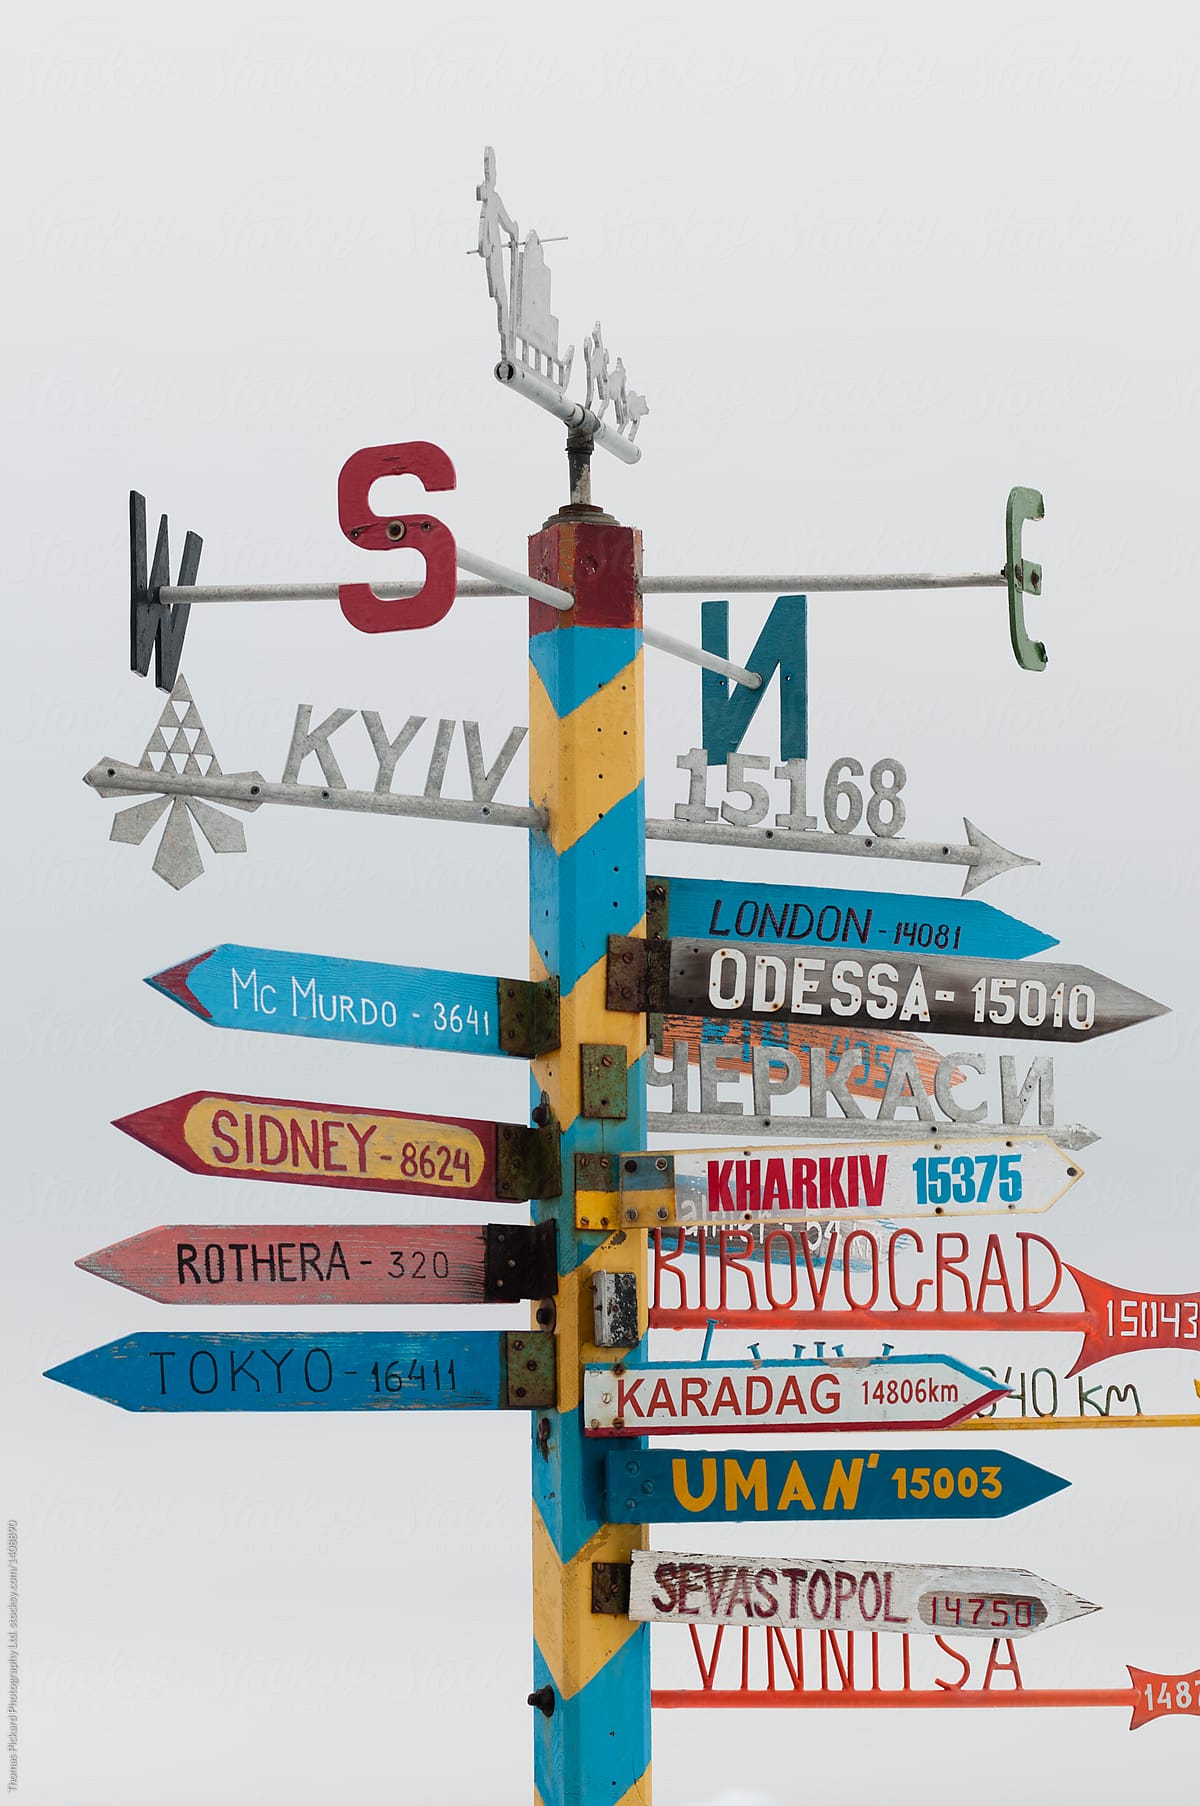 Direction sign at Vernadsky Station, Antarctica.